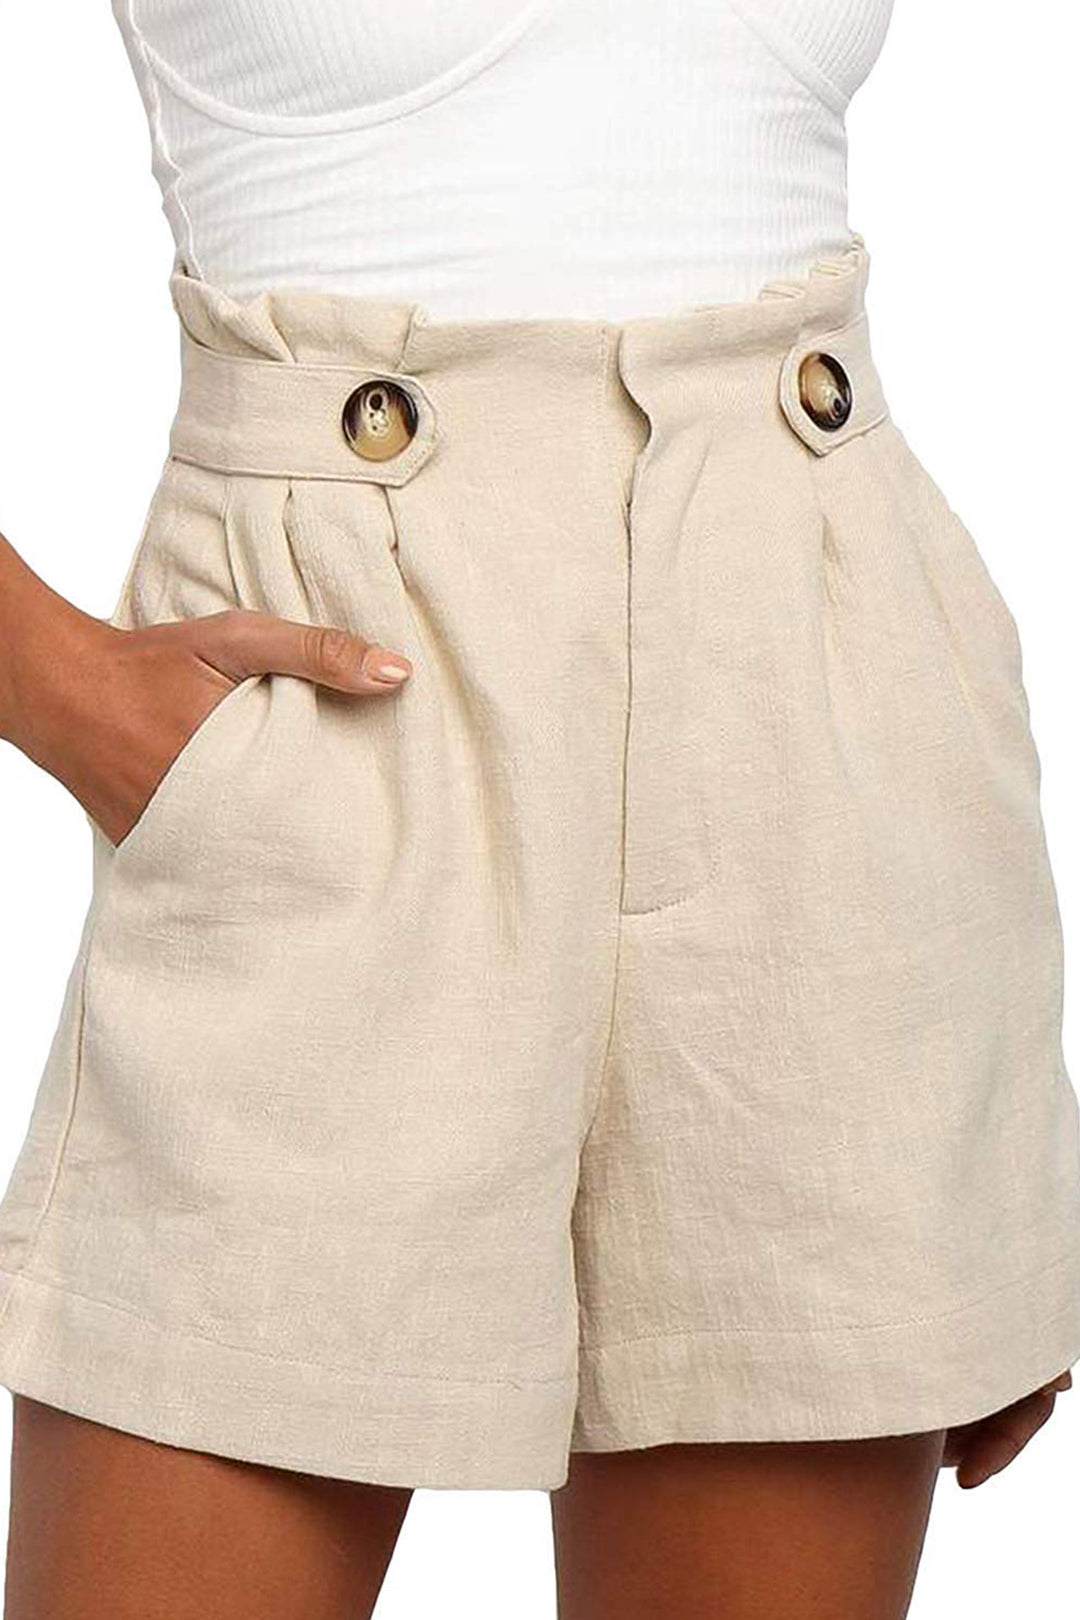 Pantalon Lino Algodon - WARDROBE ESSENTIALS 3.0